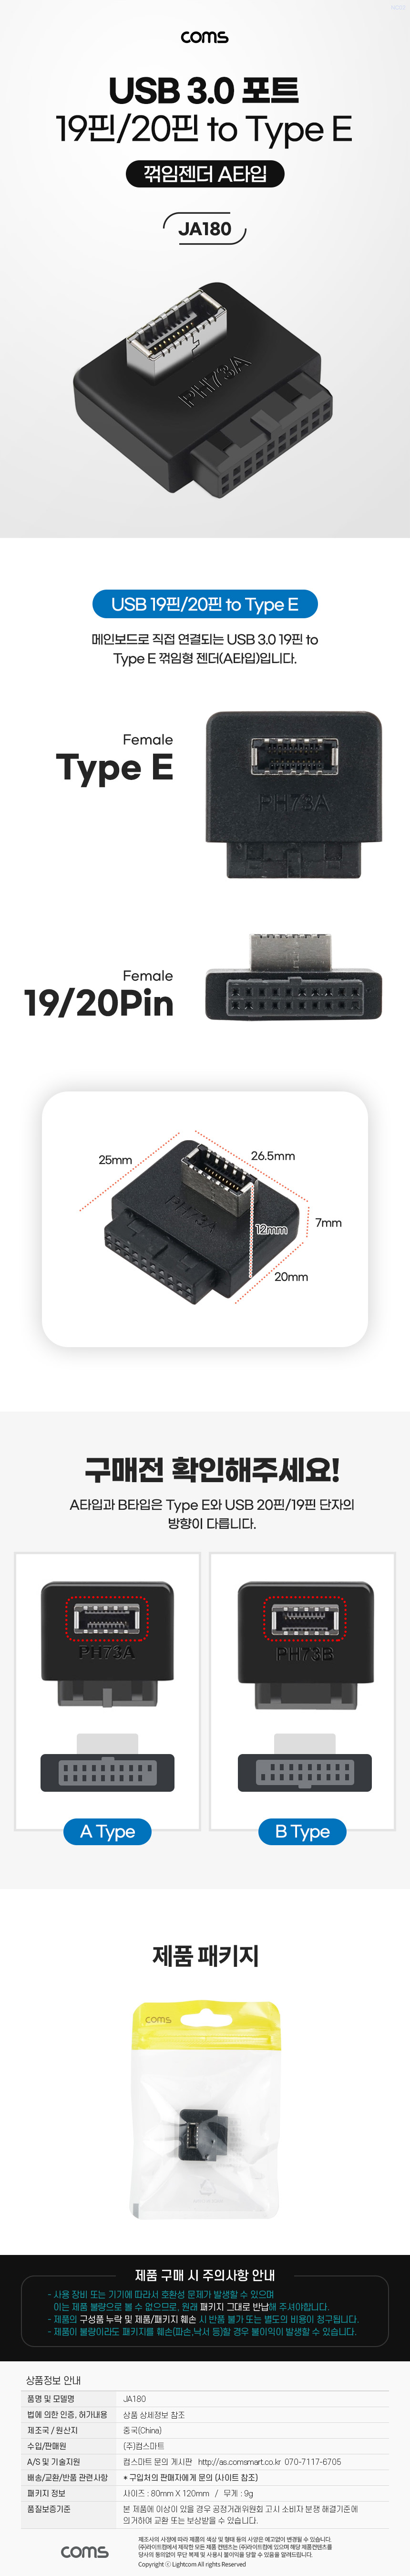 USB 3.0 19/20 to USB 3.1 Type E  F/F κ 